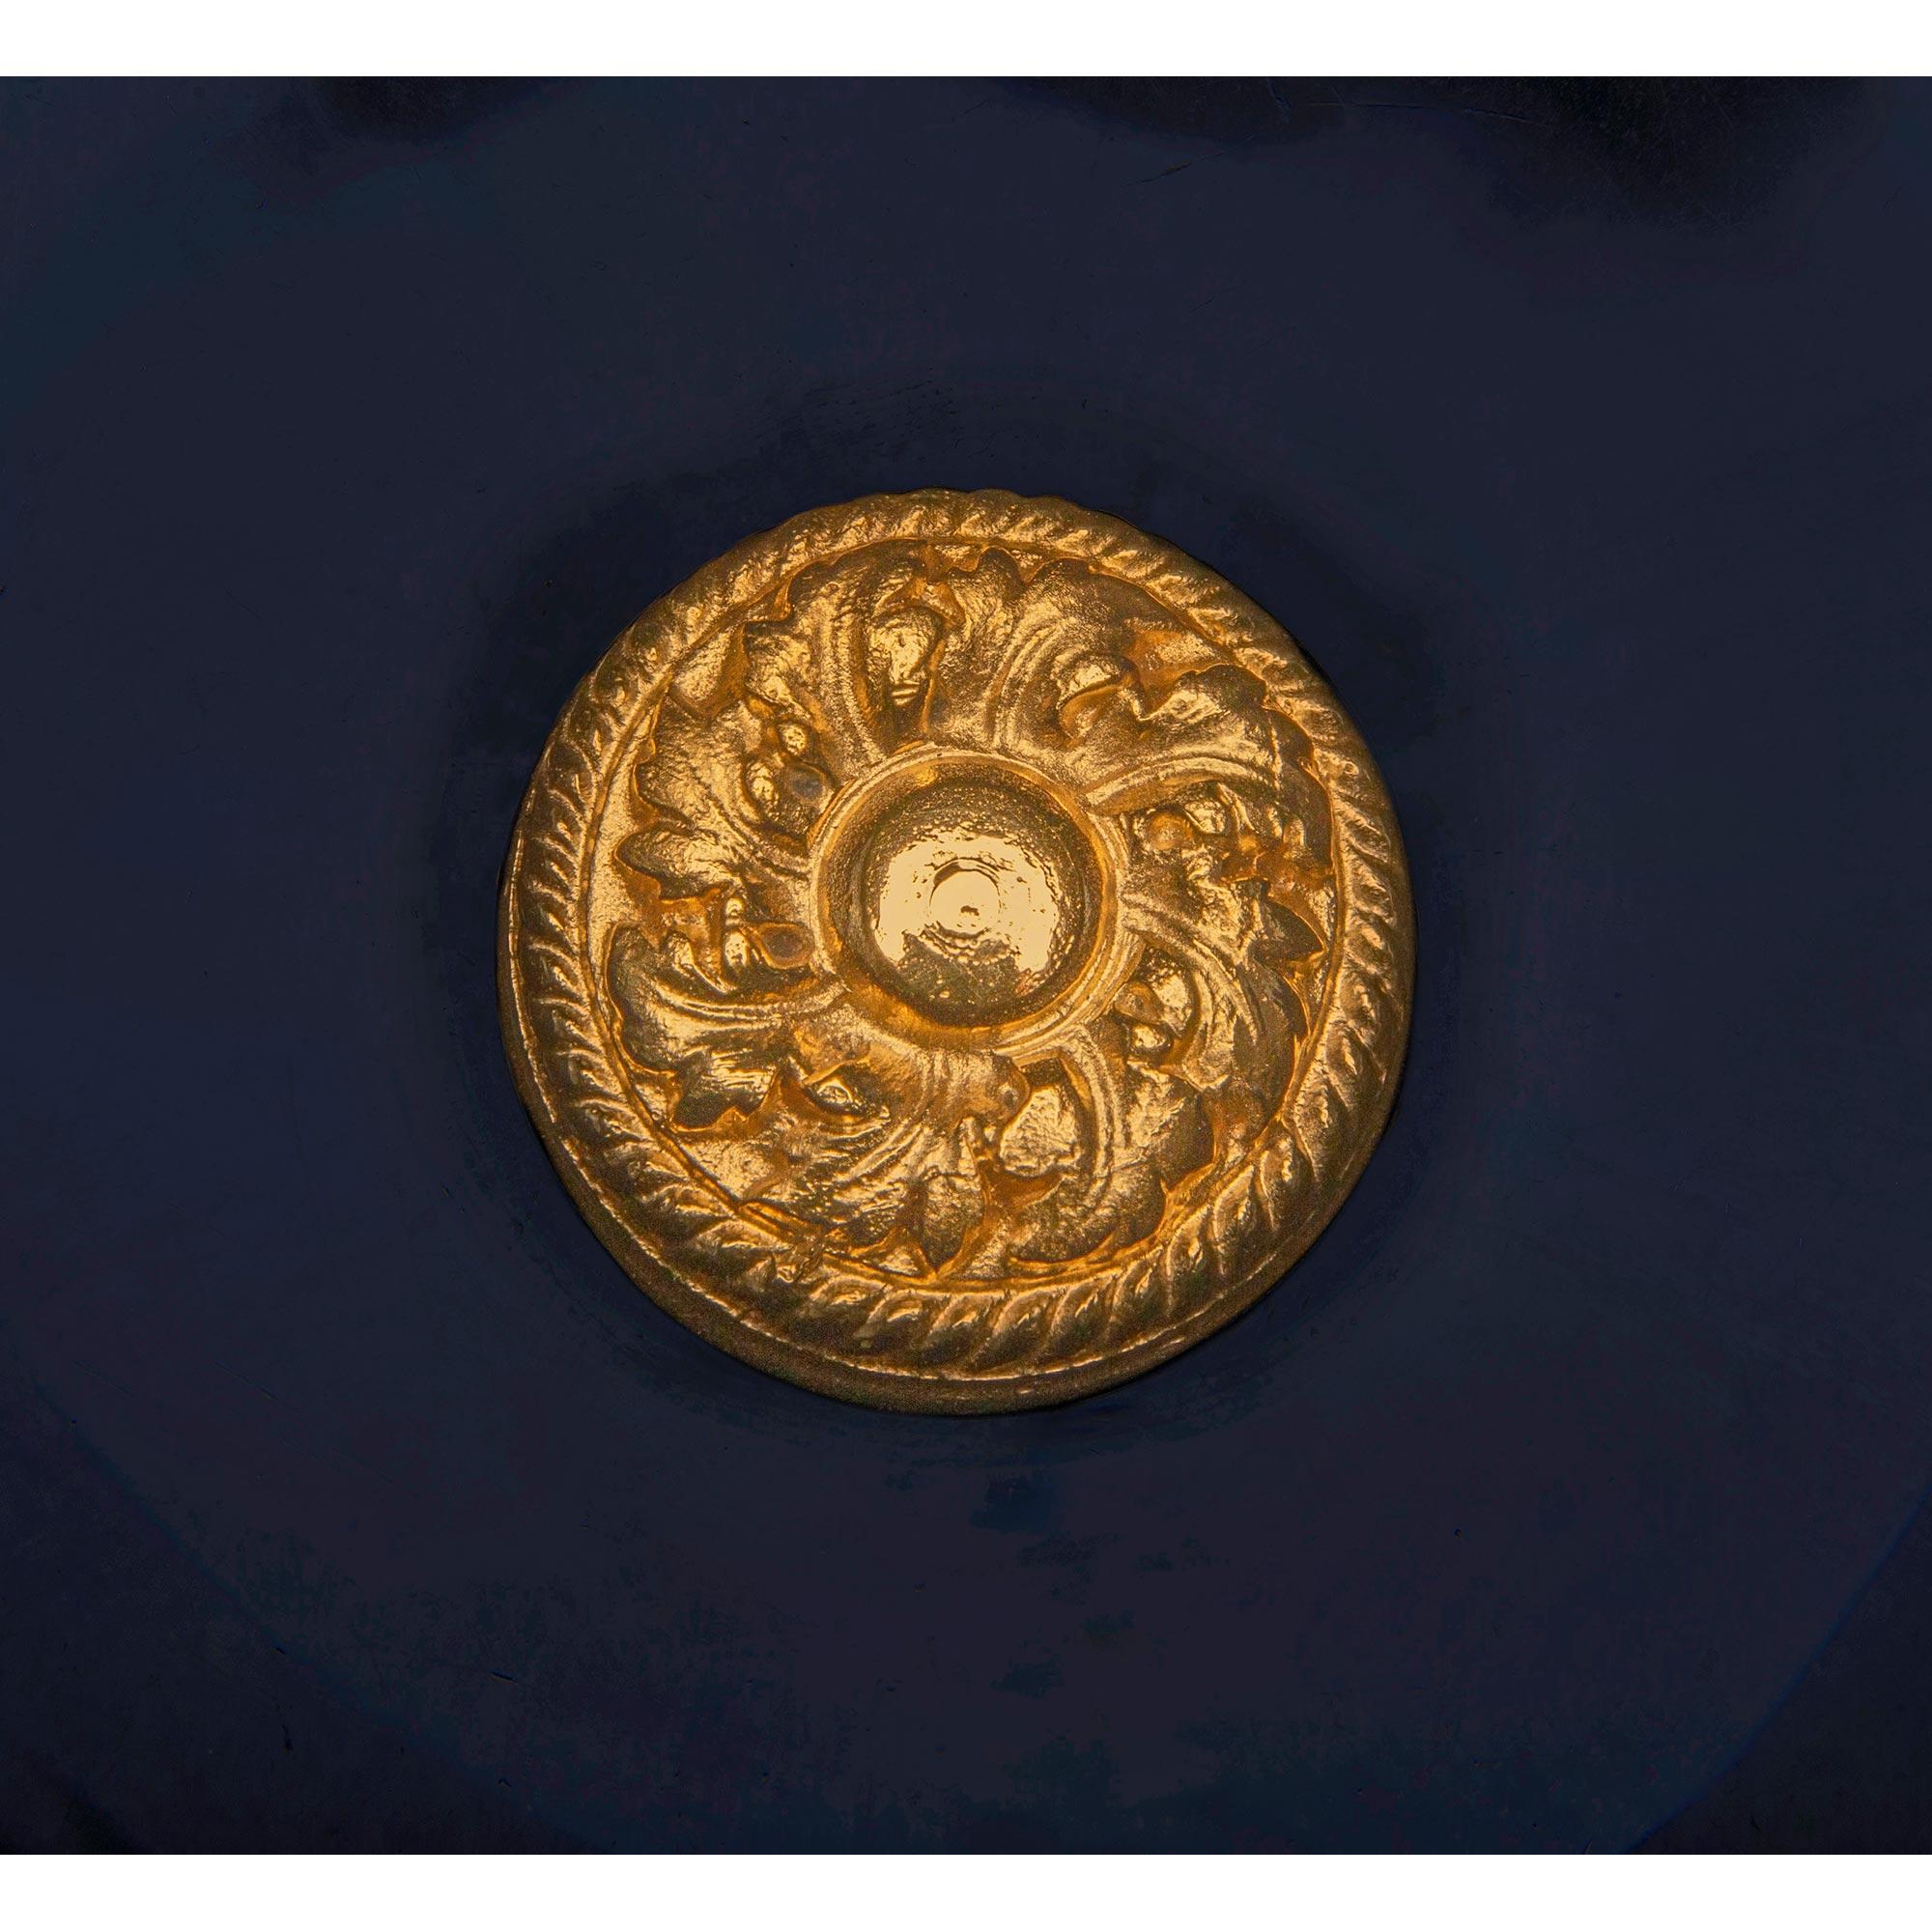 Magnifique urne en porcelaine bleu cobalt et bronze doré, de style Louis XVI, datant du 19e siècle, à Sarreguemines. La pièce centrale est surmontée d'une base circulaire en bronze doré richement ciselé, avec quatre beaux pieds en bloc ornés de